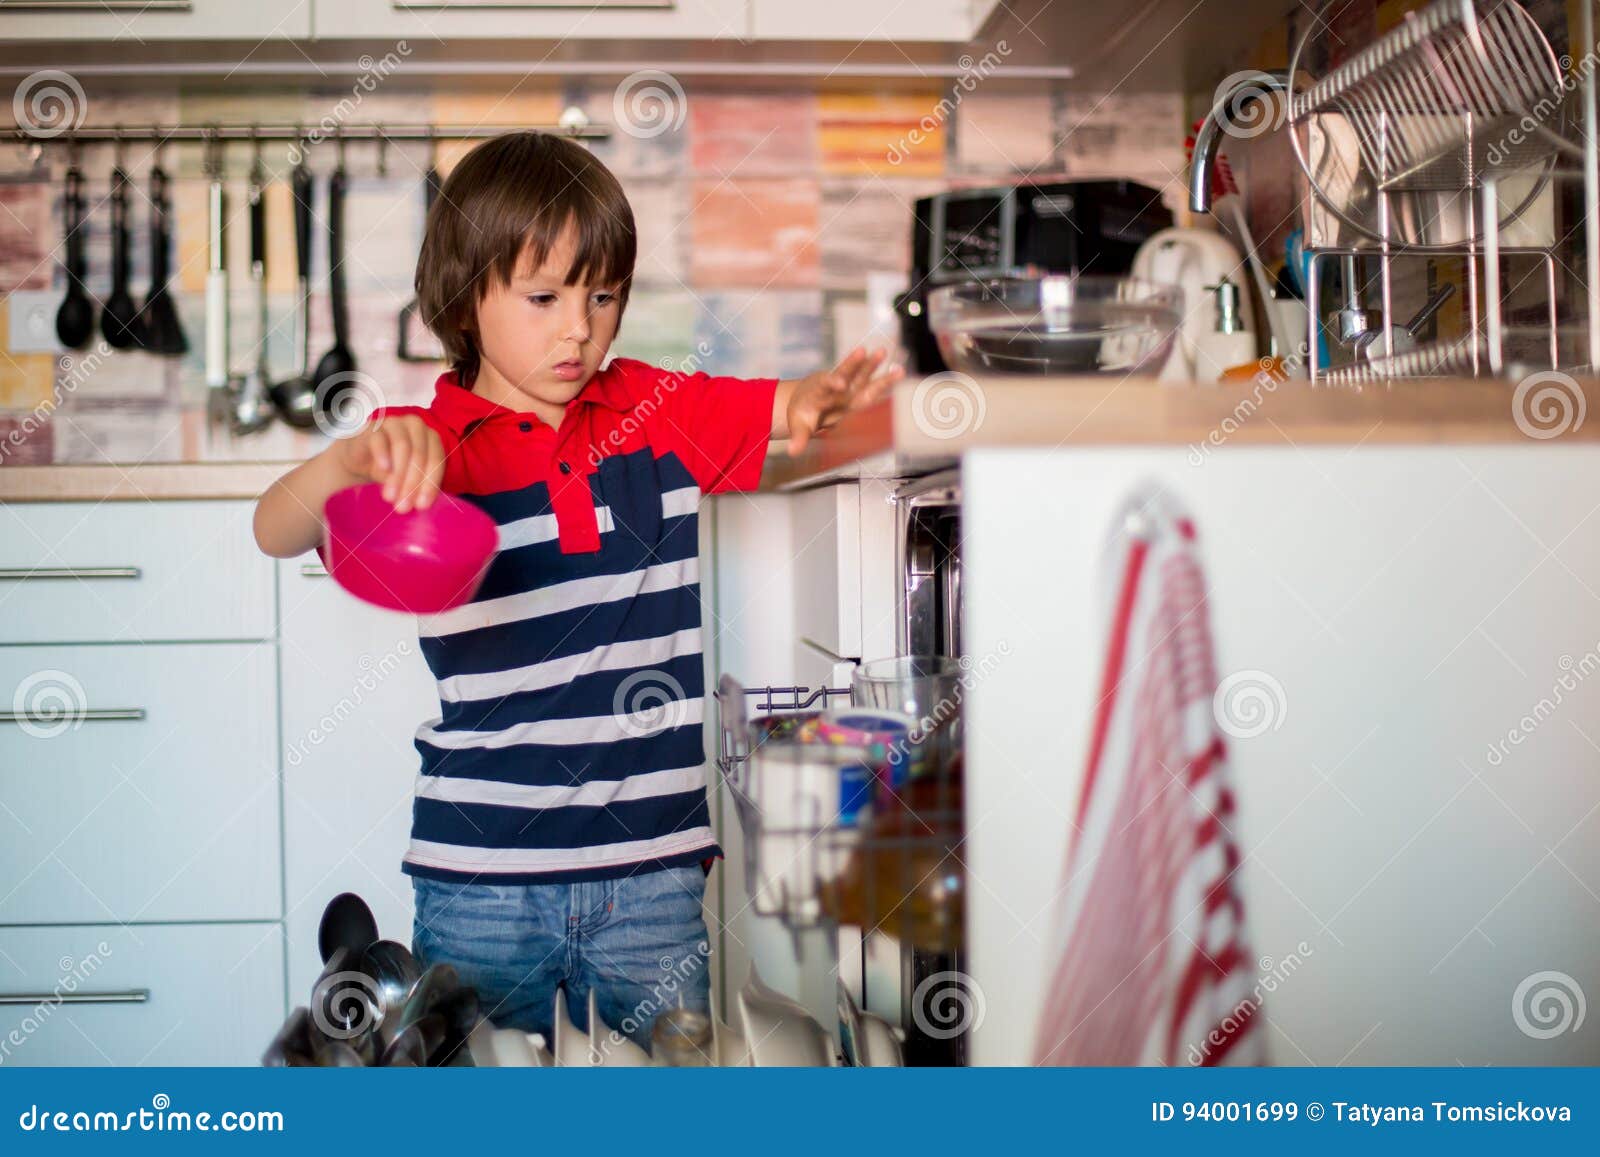 Preschool Child Boy Helping Mom Putting Dirty Dishes In Dishwasher